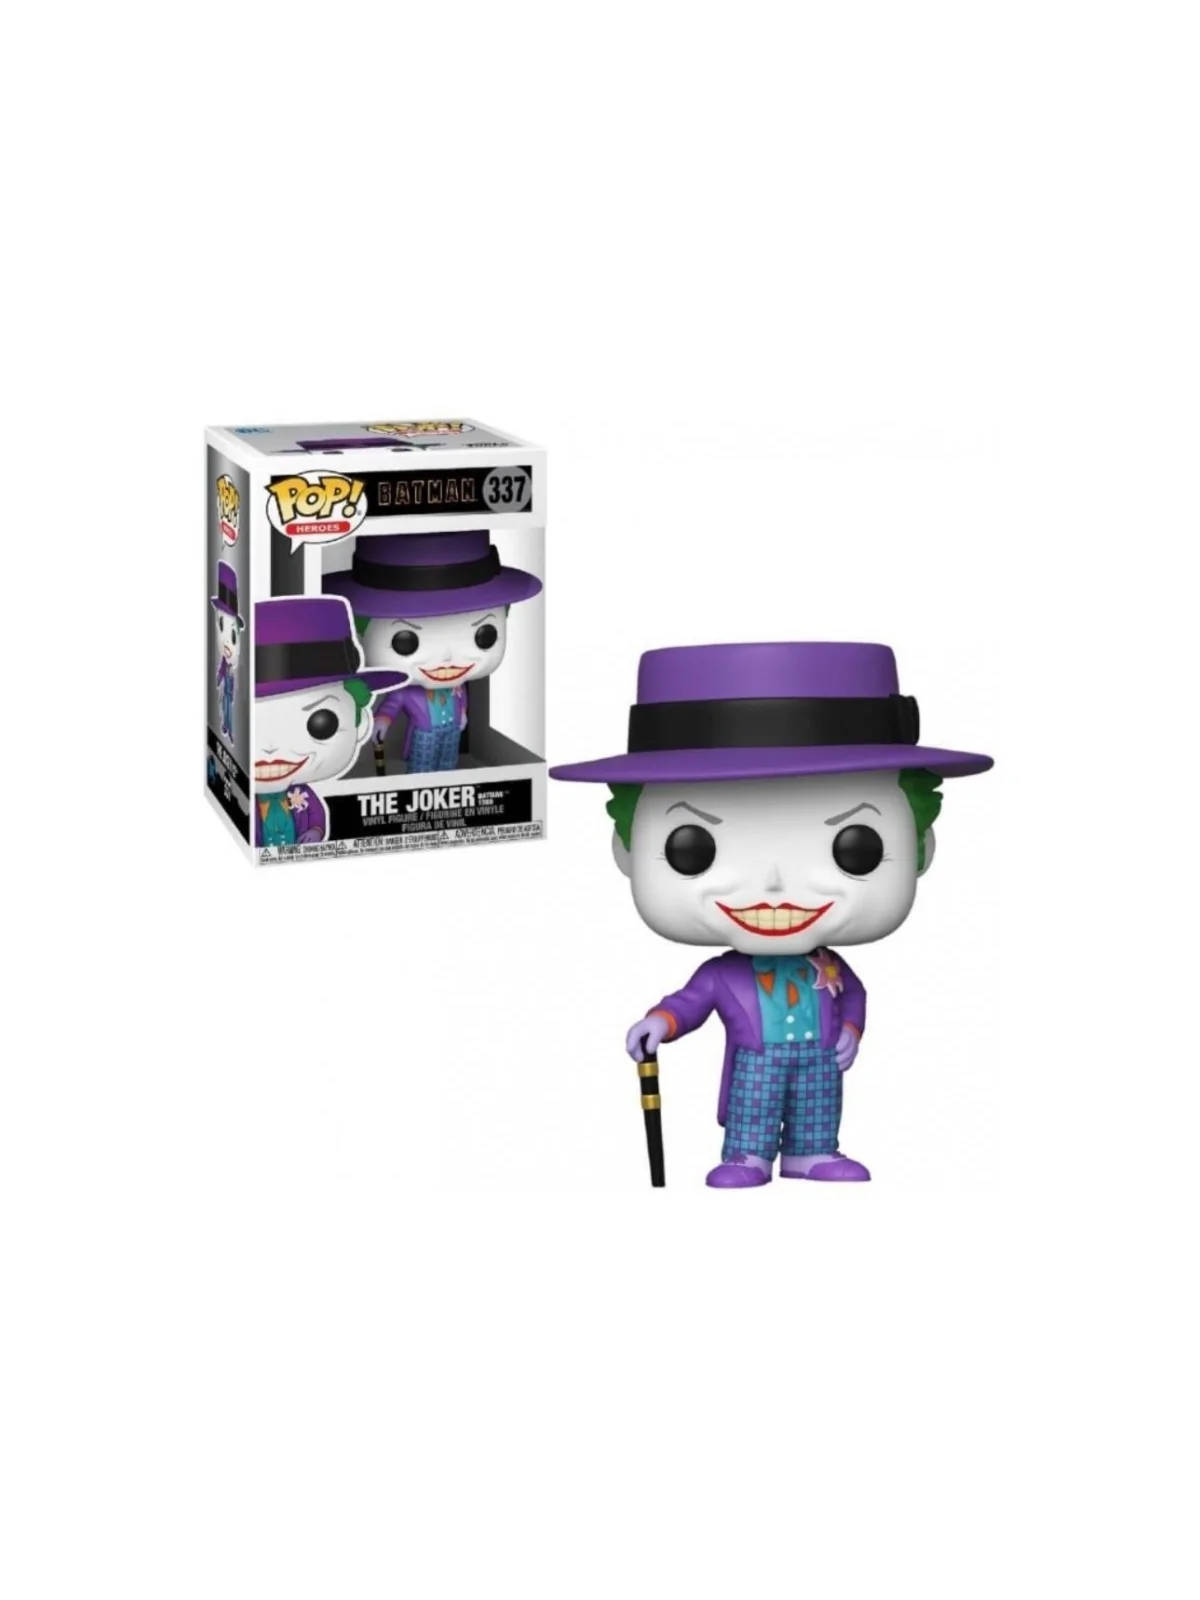 Comprar Funko POP! DC Joker con Sombrero 1989 (337) barato al mejor pr